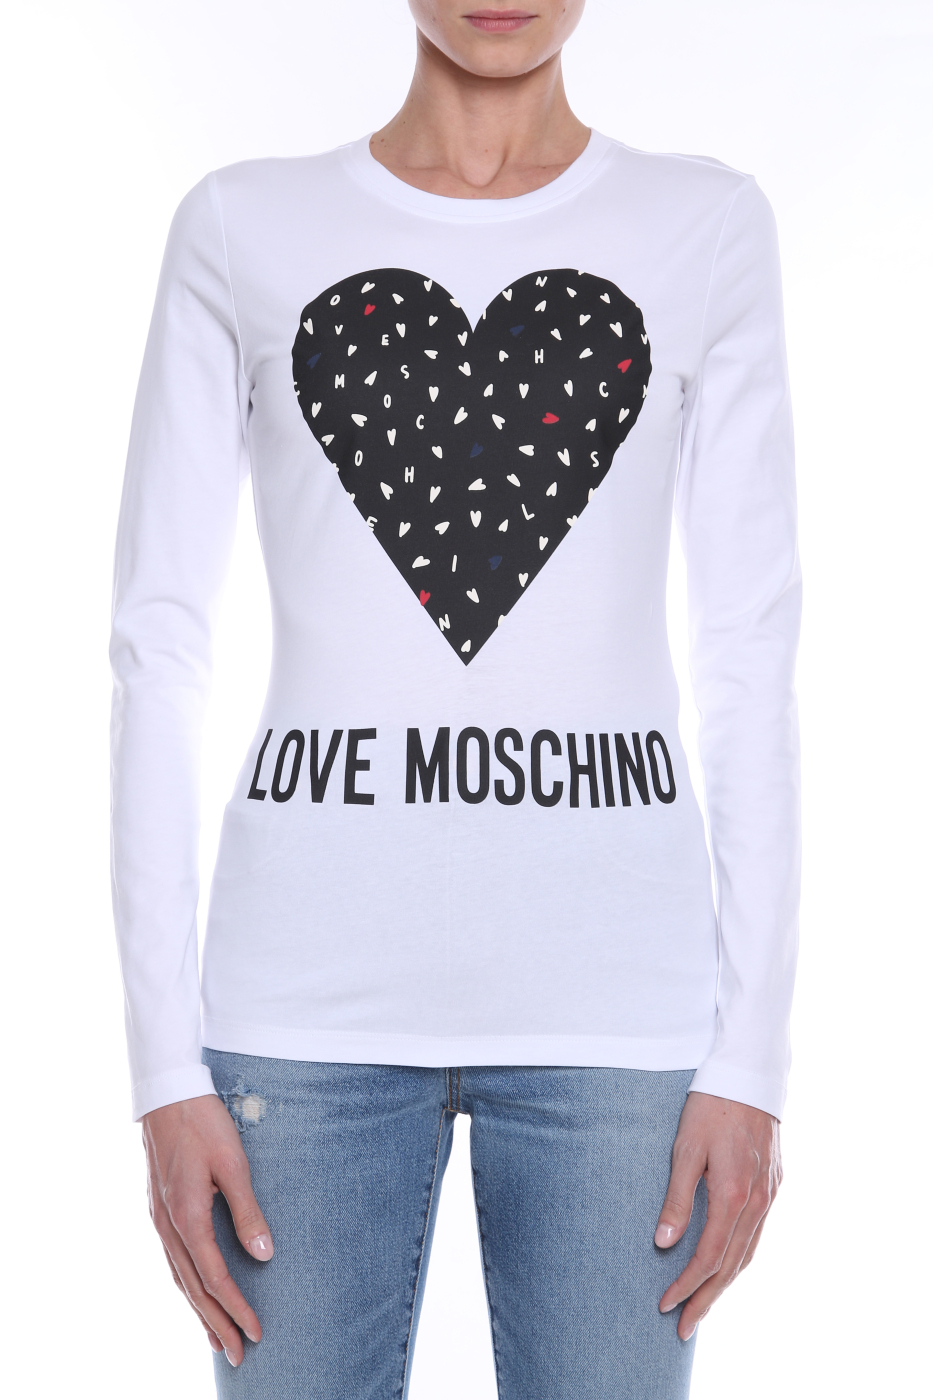 LOVE MOSCHINO camiseta blanca con corazón